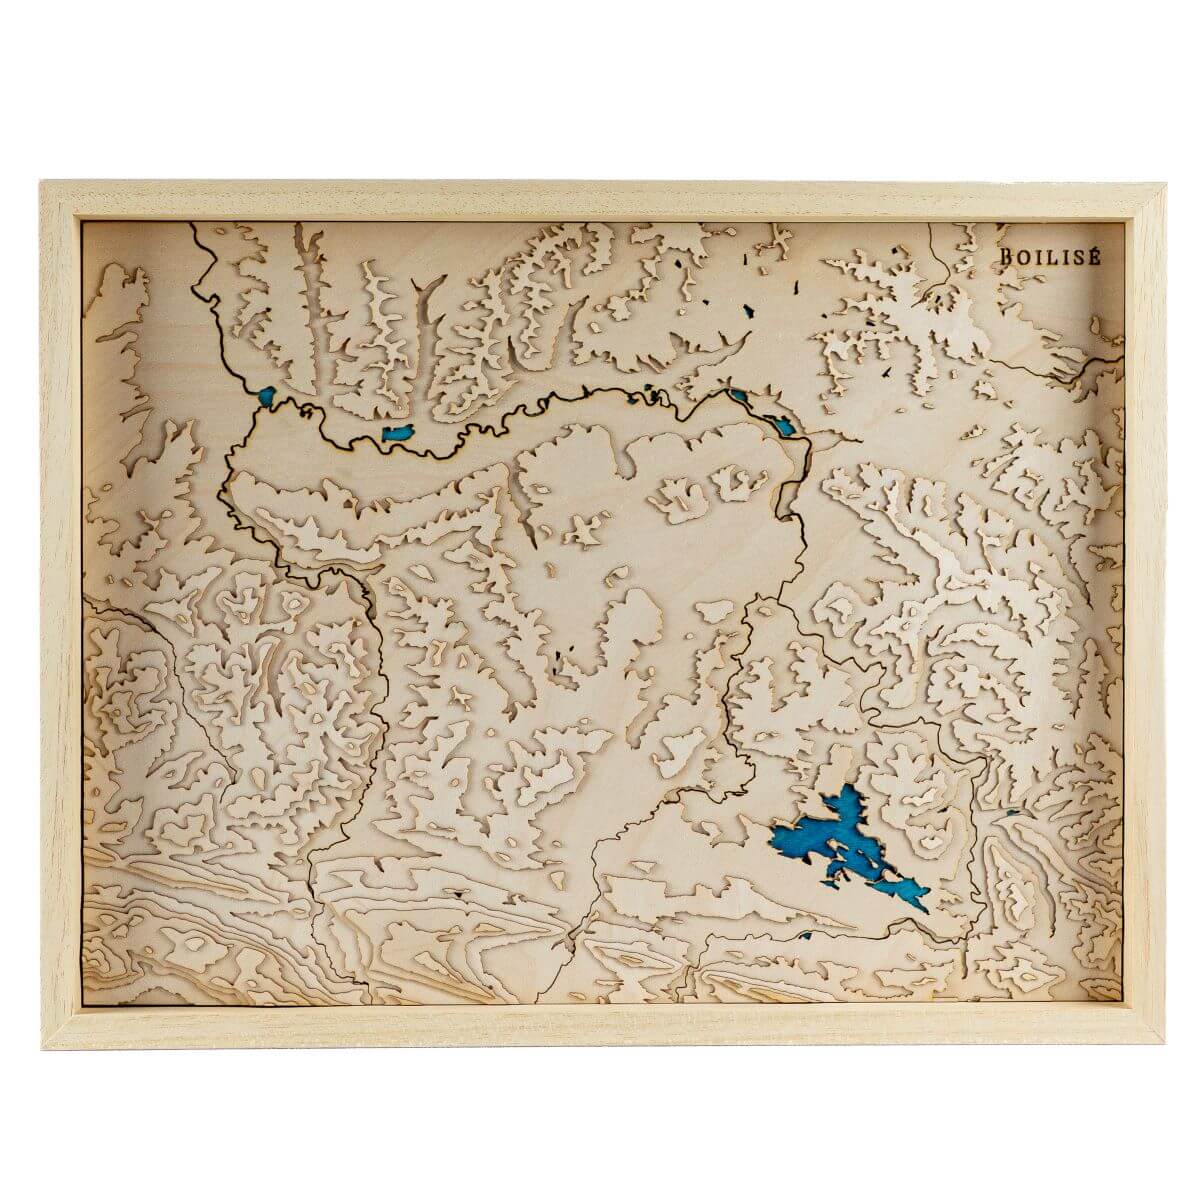 Tableau du pays de Mirepoix en relief avec une eau bleue marine